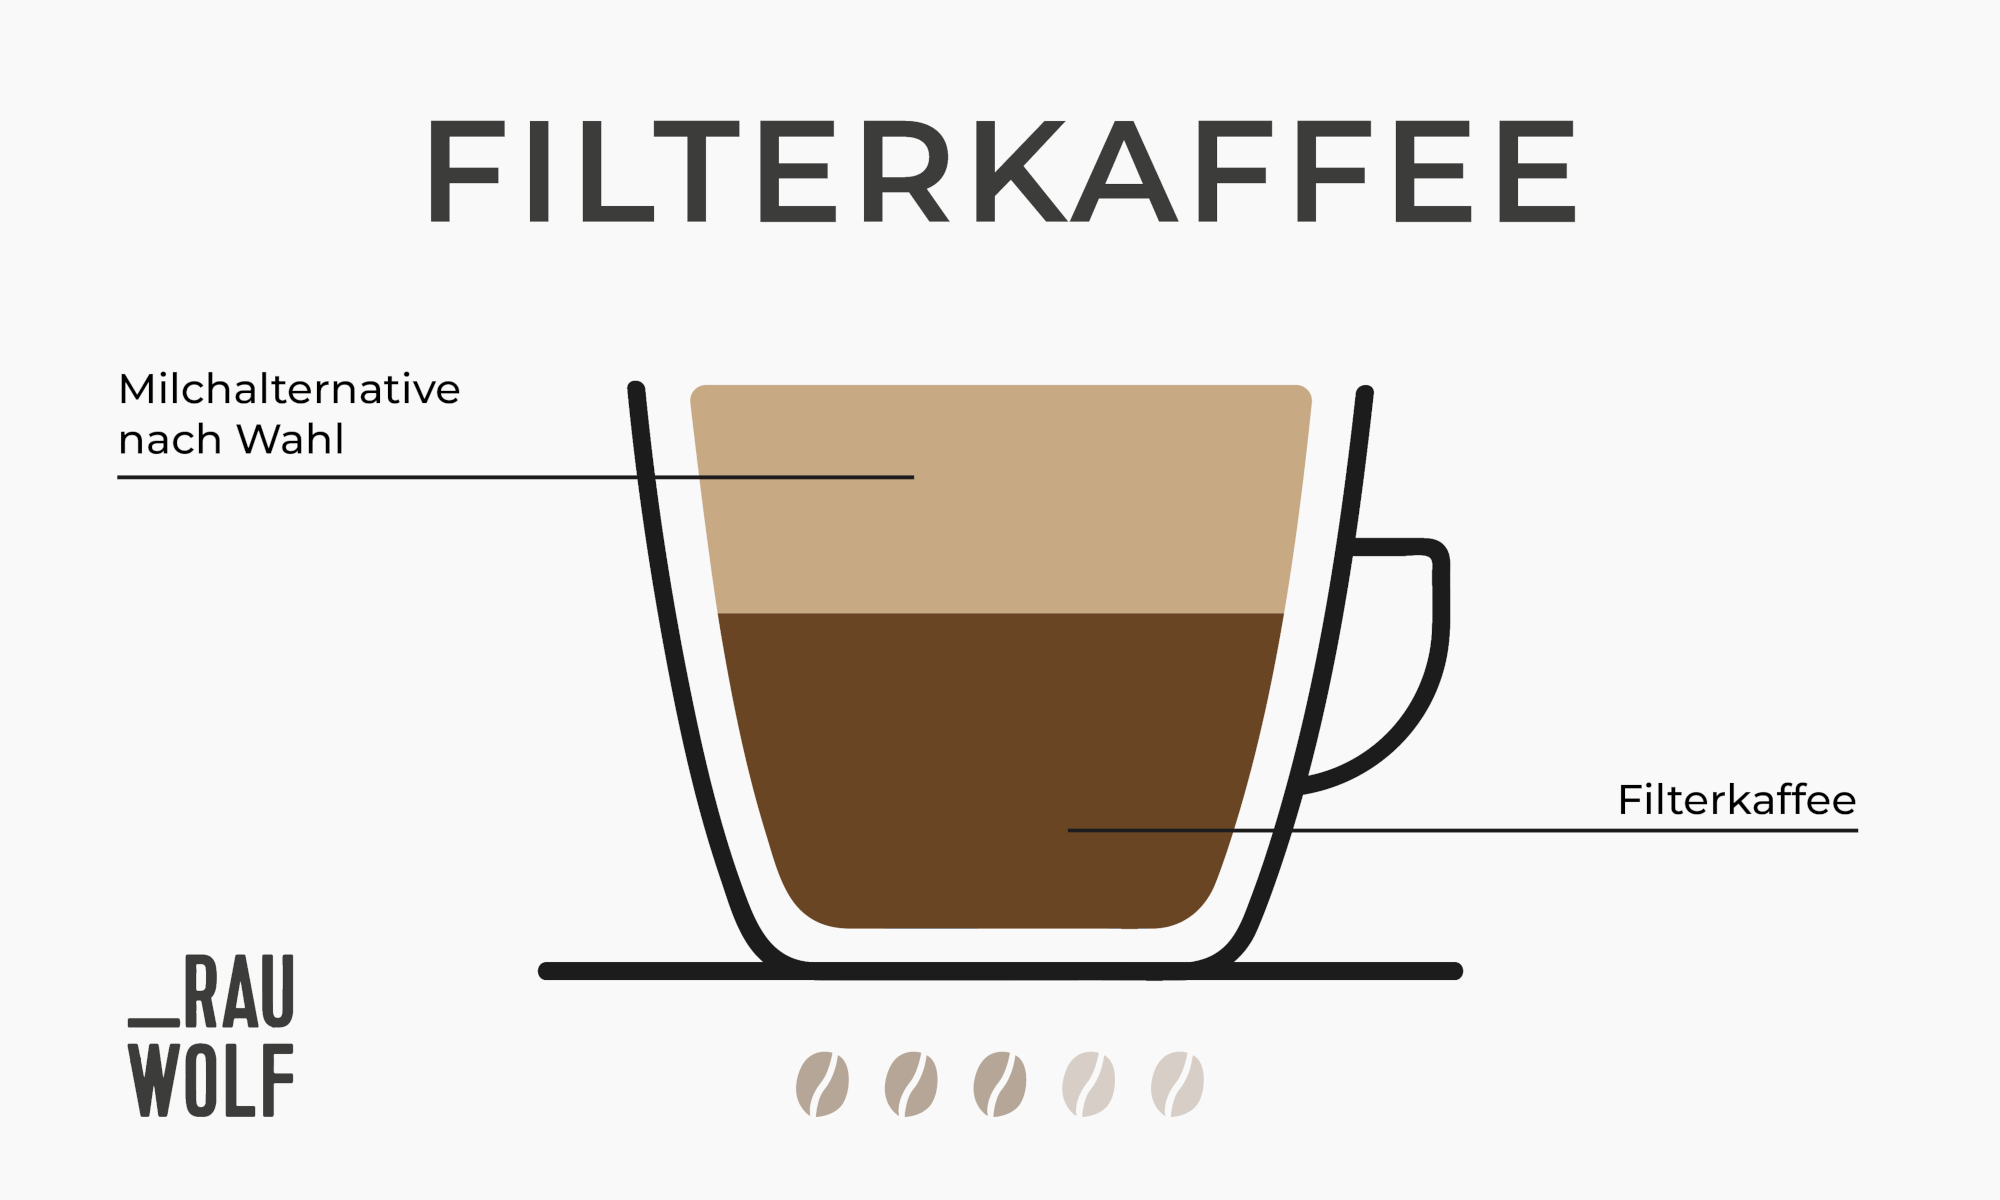 Kaffee-Trend Filterkaffee mit dem Handfilter